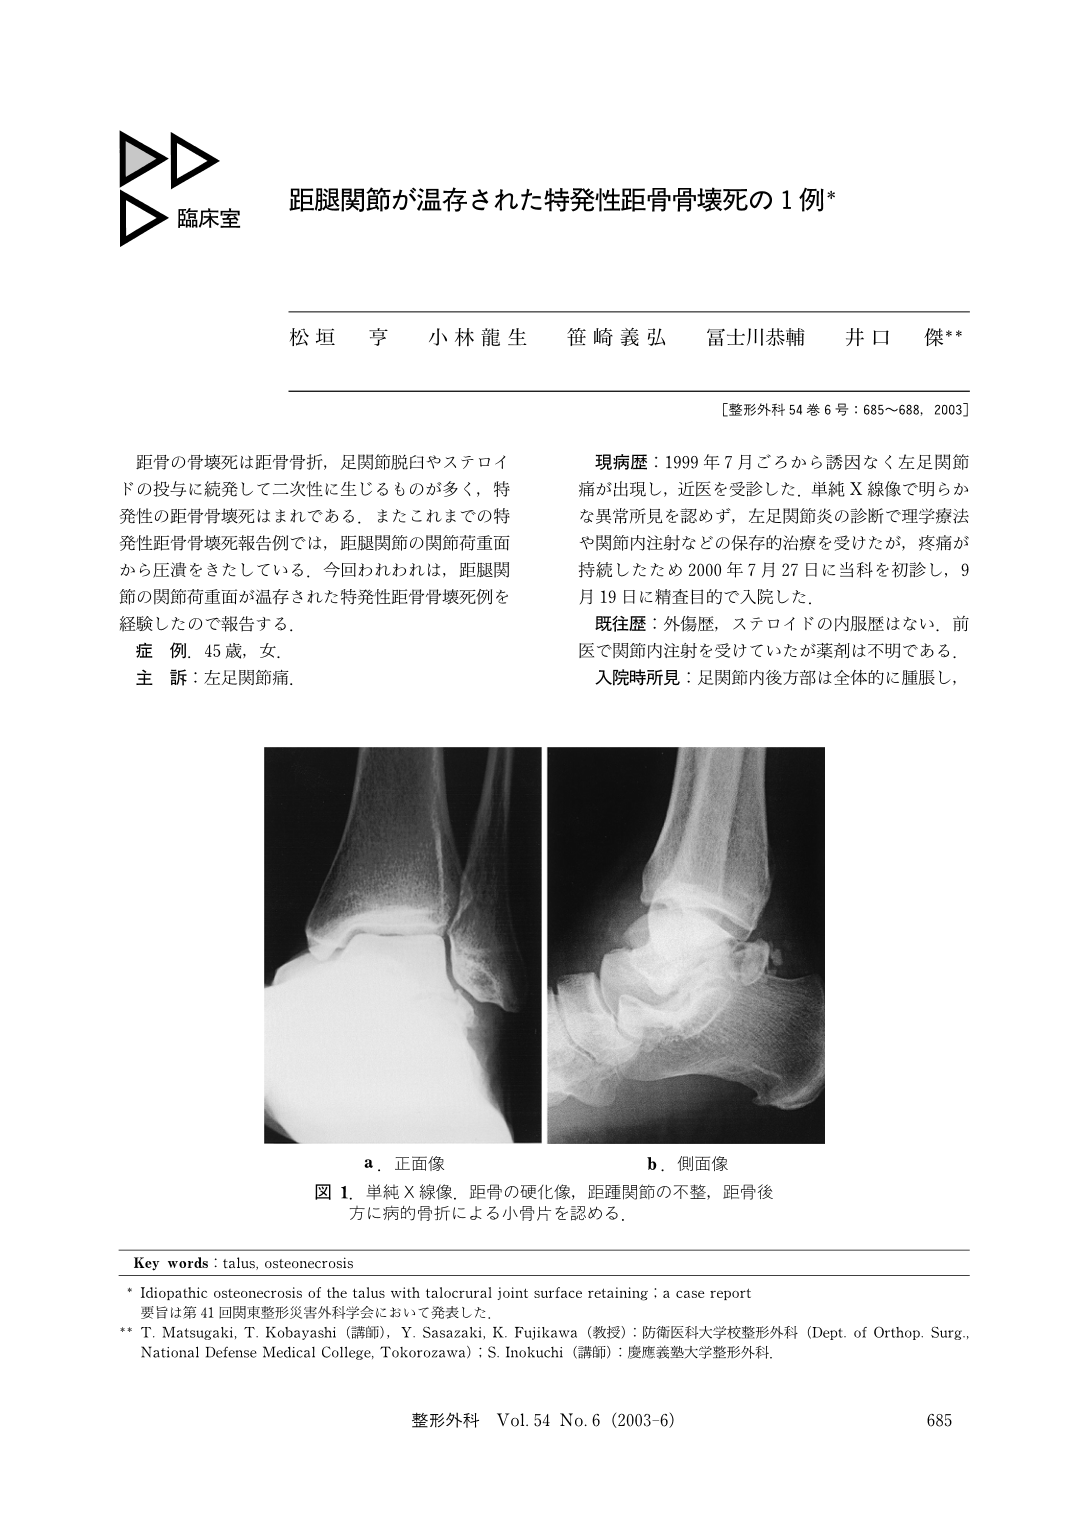 距腿関節が温存された特発性距骨骨壊死の1例 (臨床雑誌整形外科 54巻6 